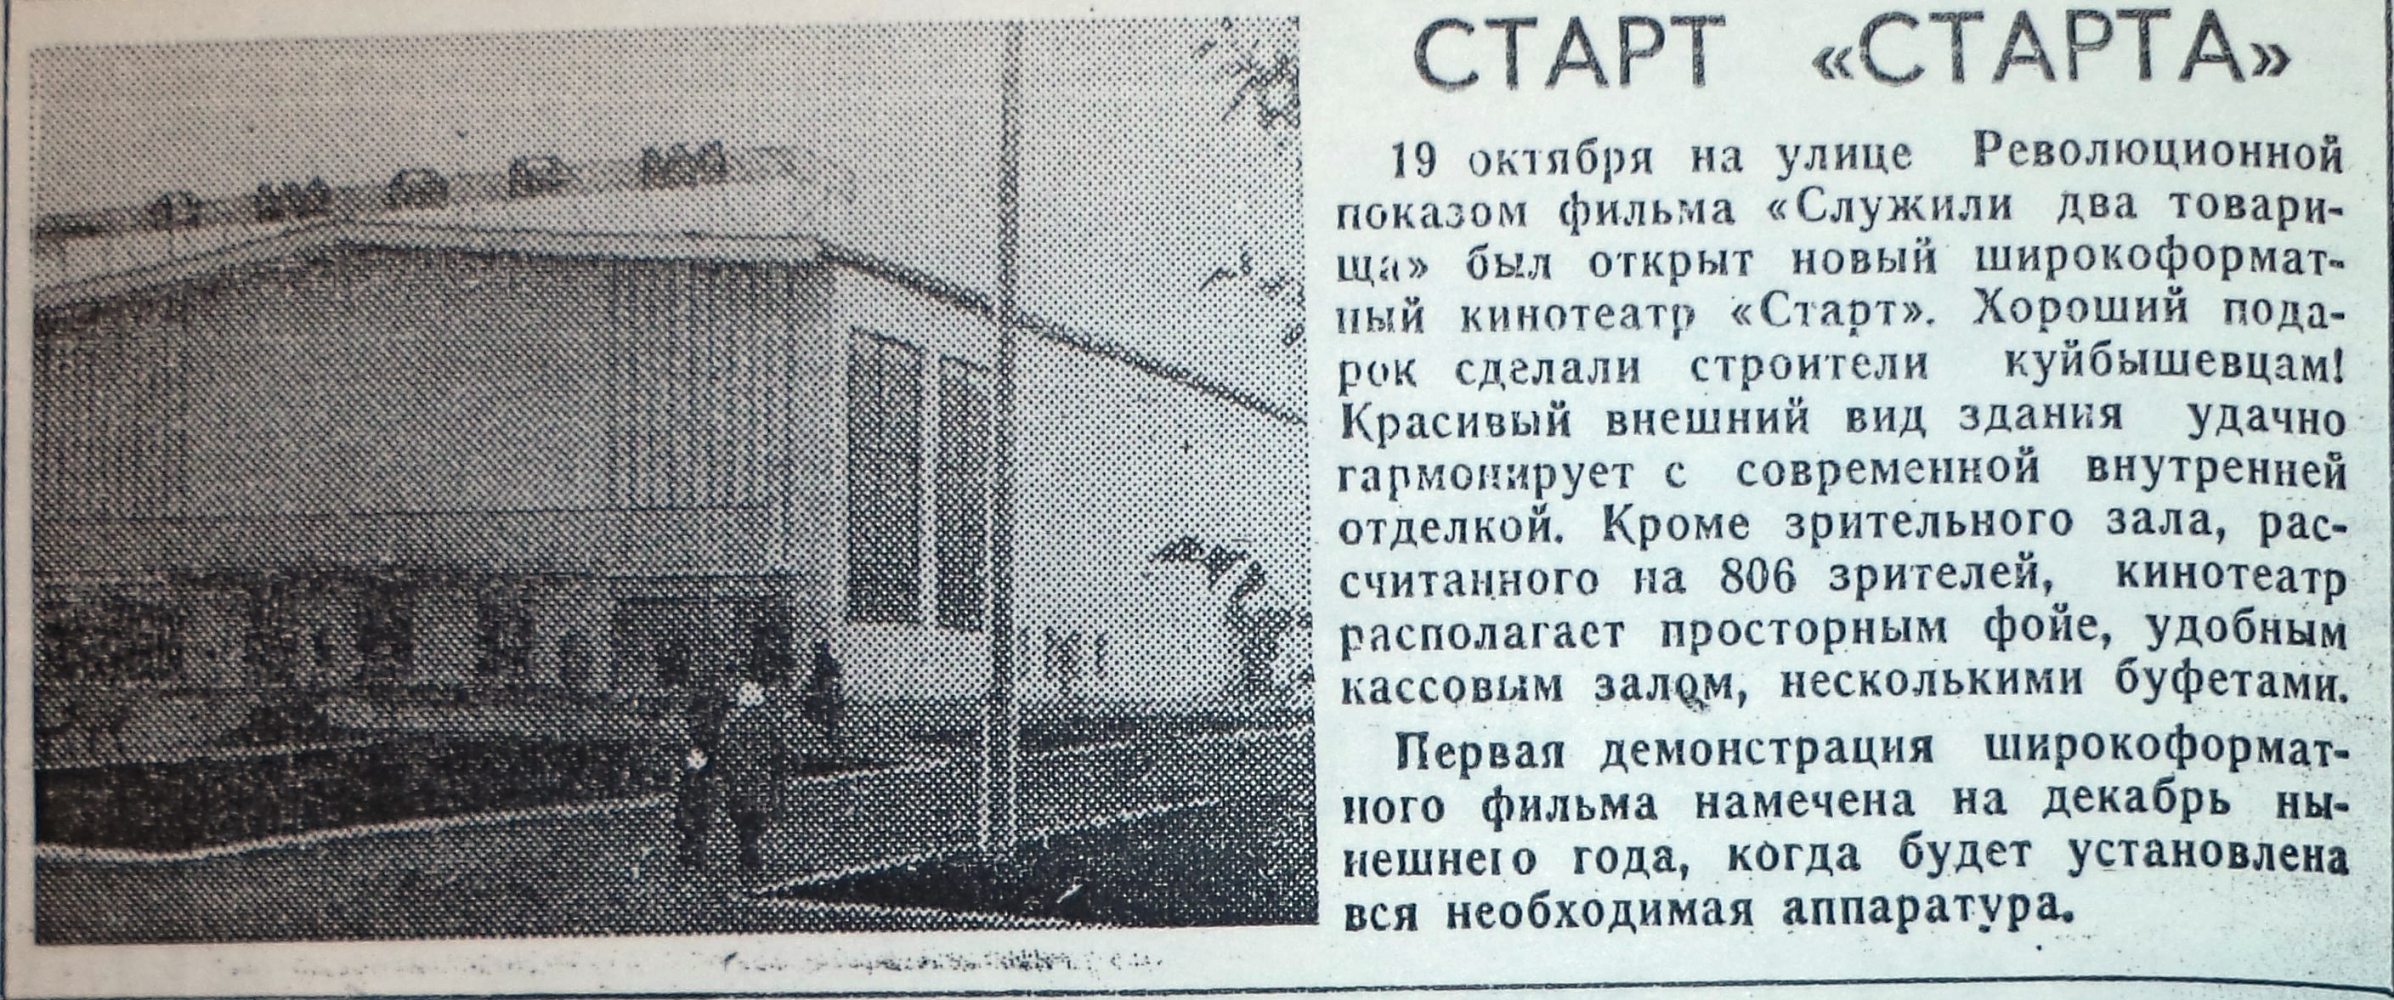 Революционная-ФОТО-62-ВКц-1968-10-22-открытие к-ра Старт